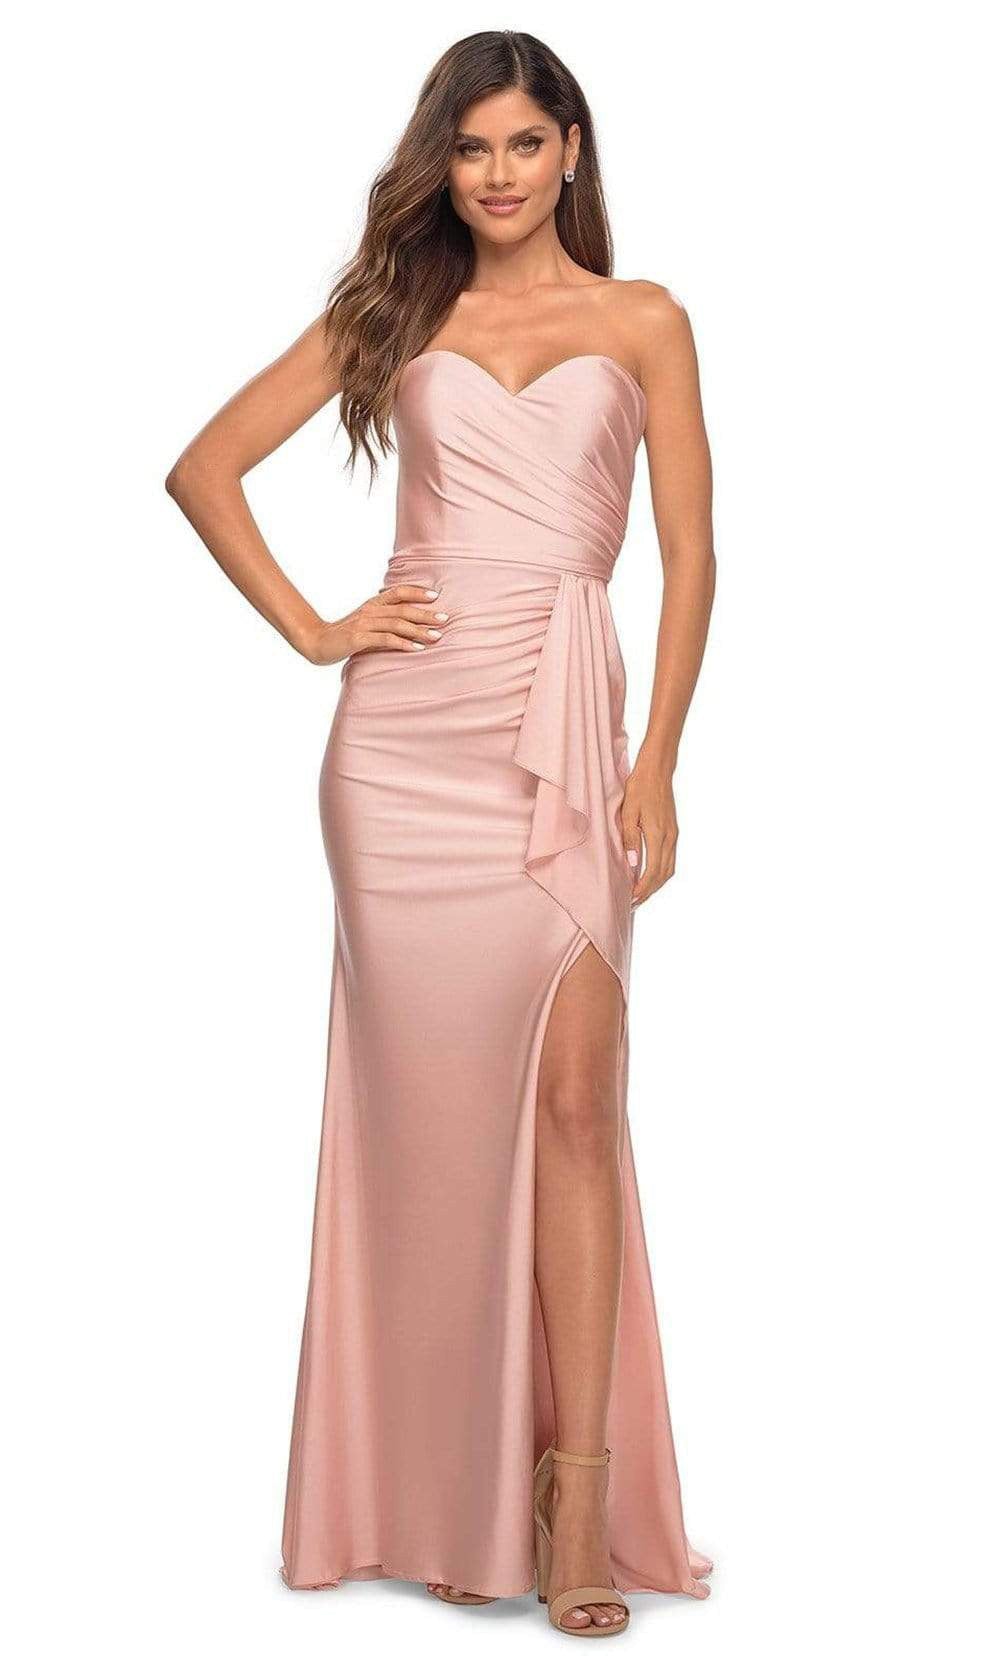 La Femme - 30515 Sweetheart Ruched Sheath Dress Prom Dresses 00 / Mauve